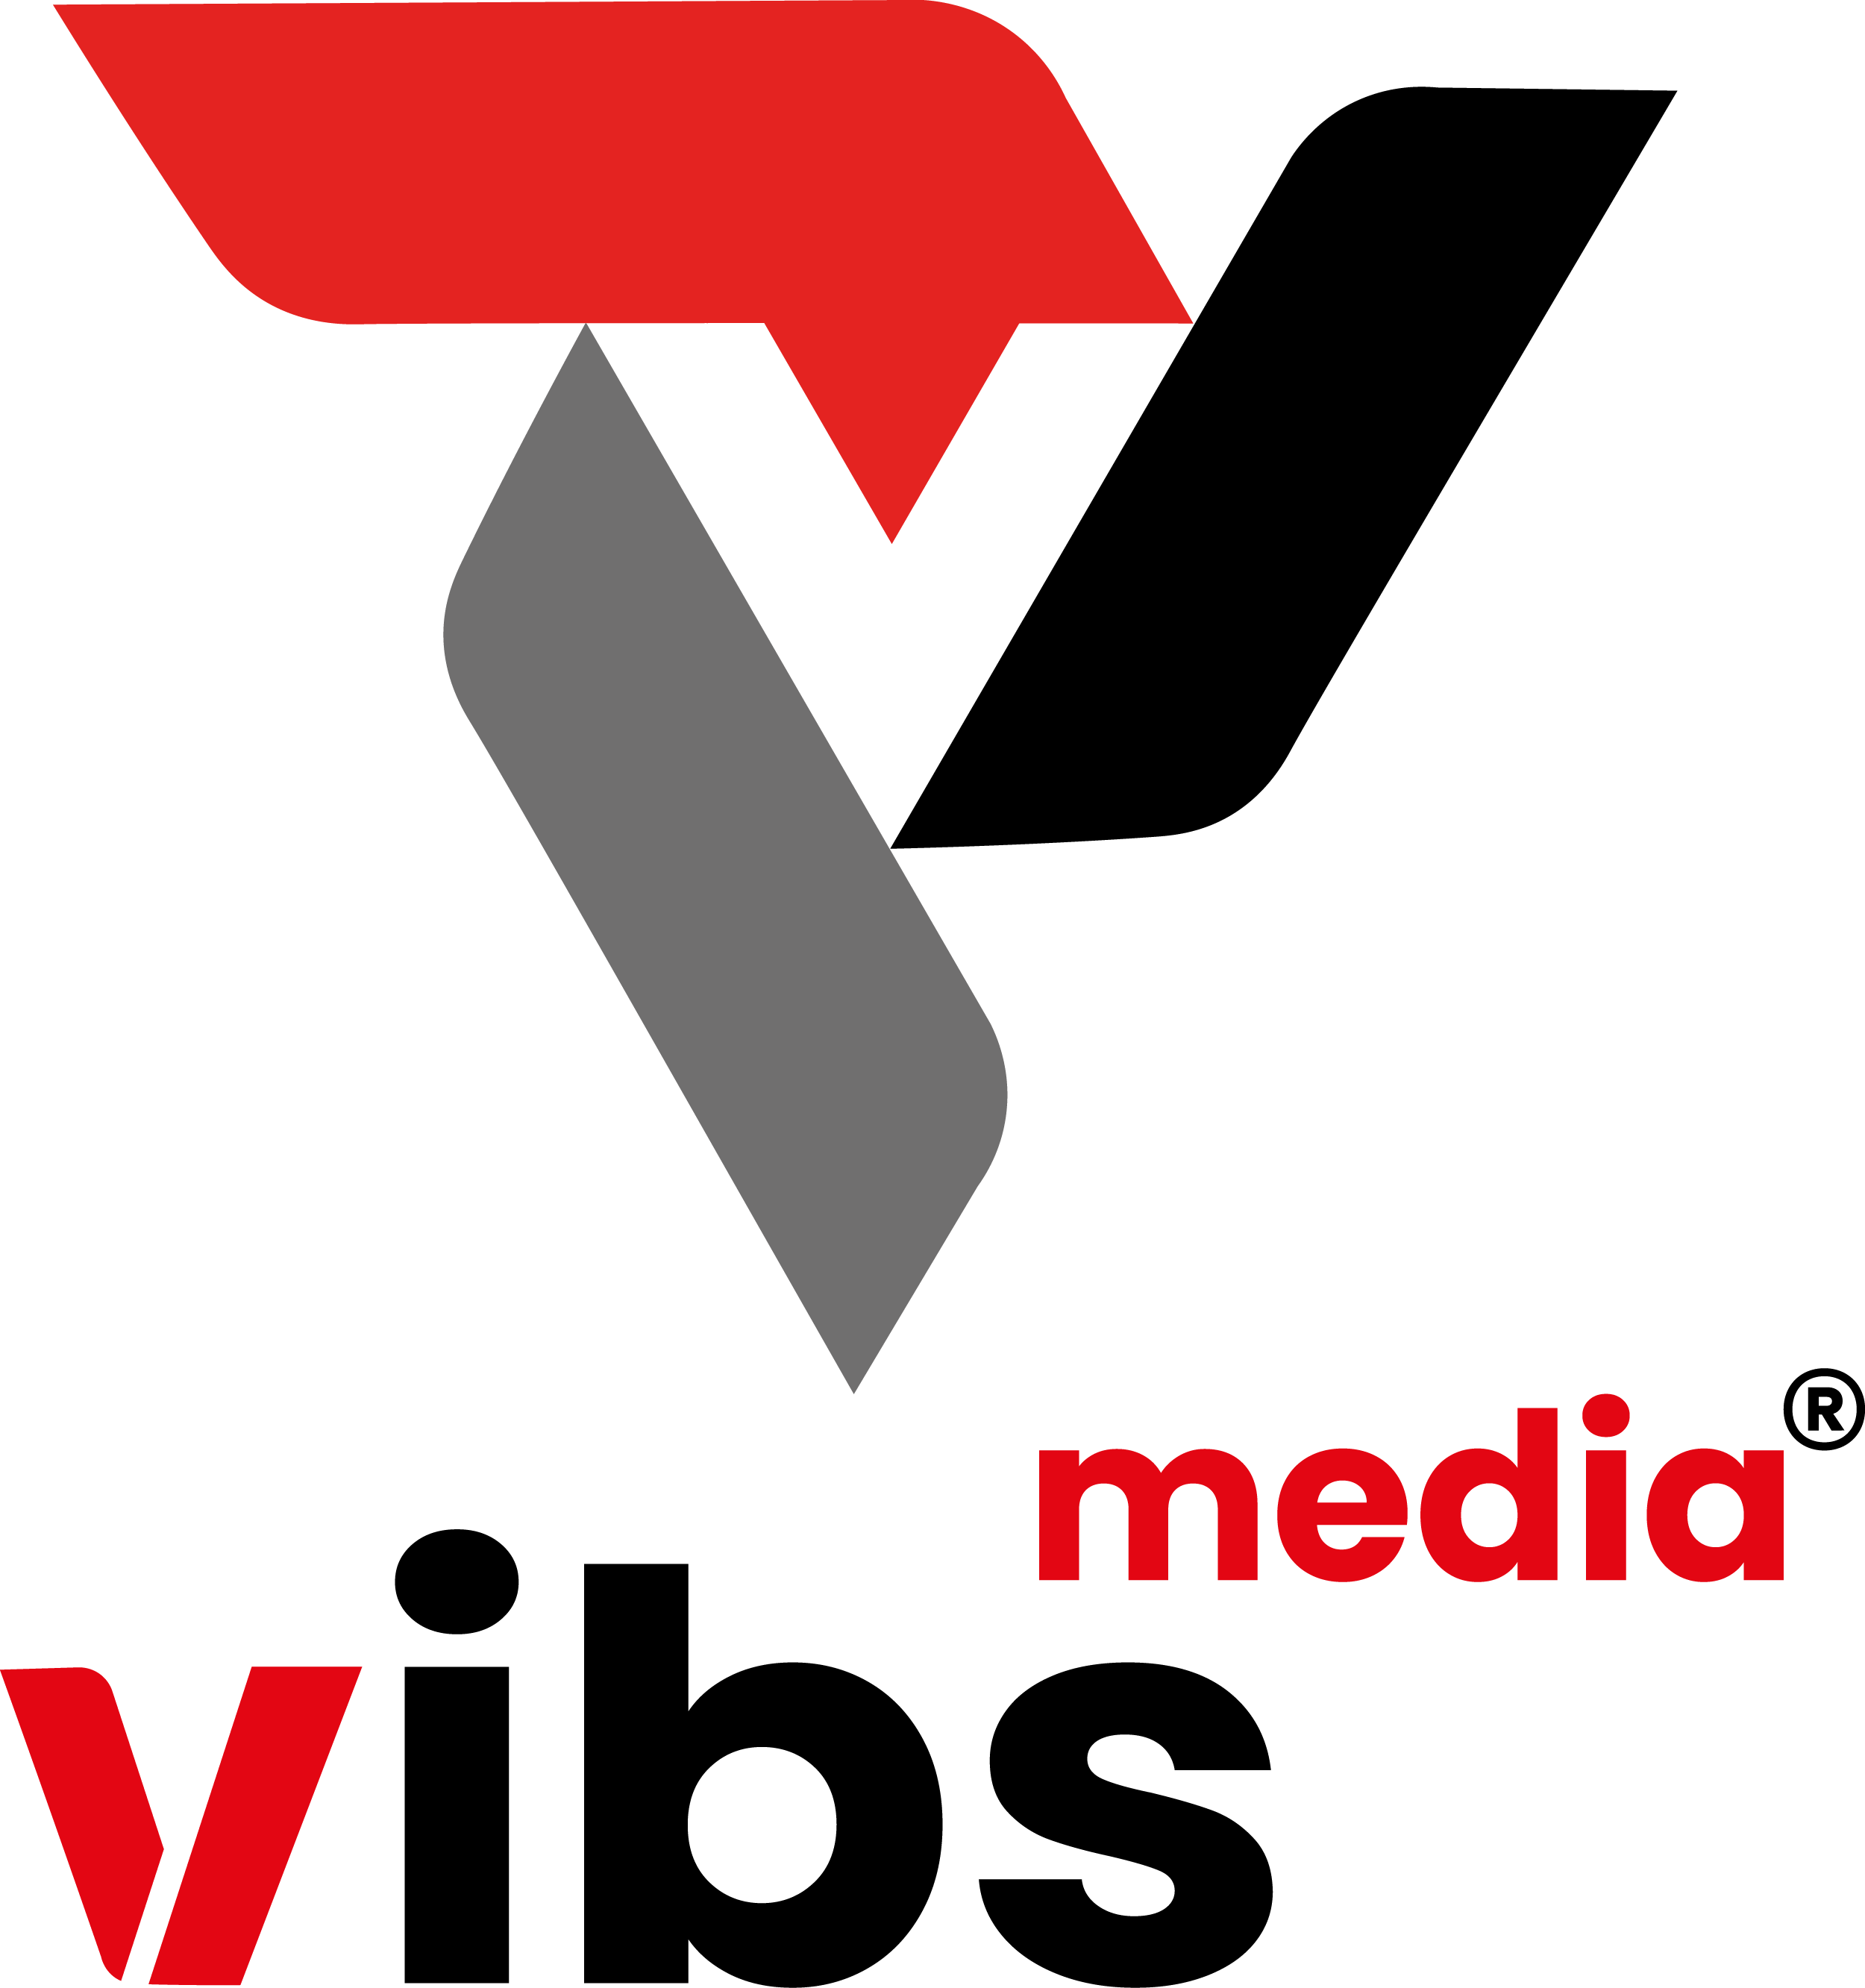 Vibs Media, Germany